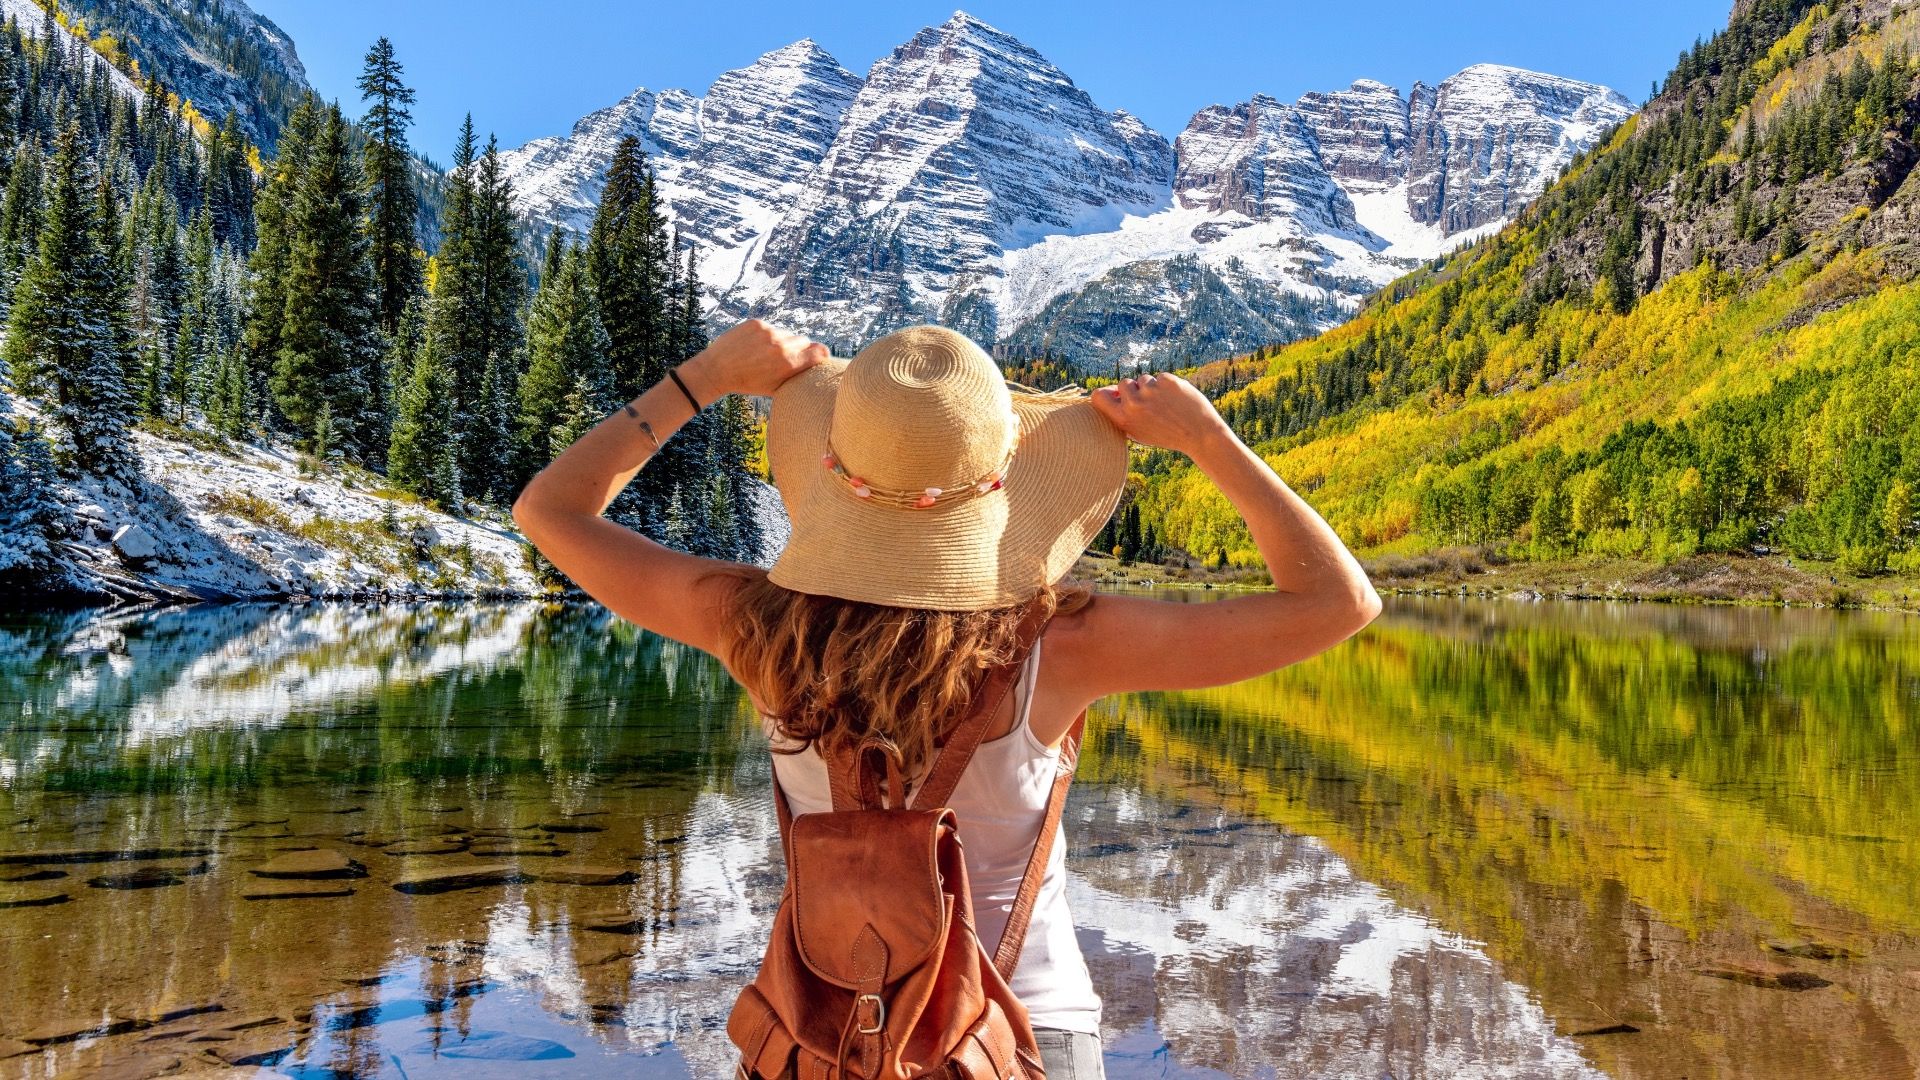 Maroon Bells odbijające się w krystalicznie czystym jeziorze Maroon, Aspen, Kolorado, USA.